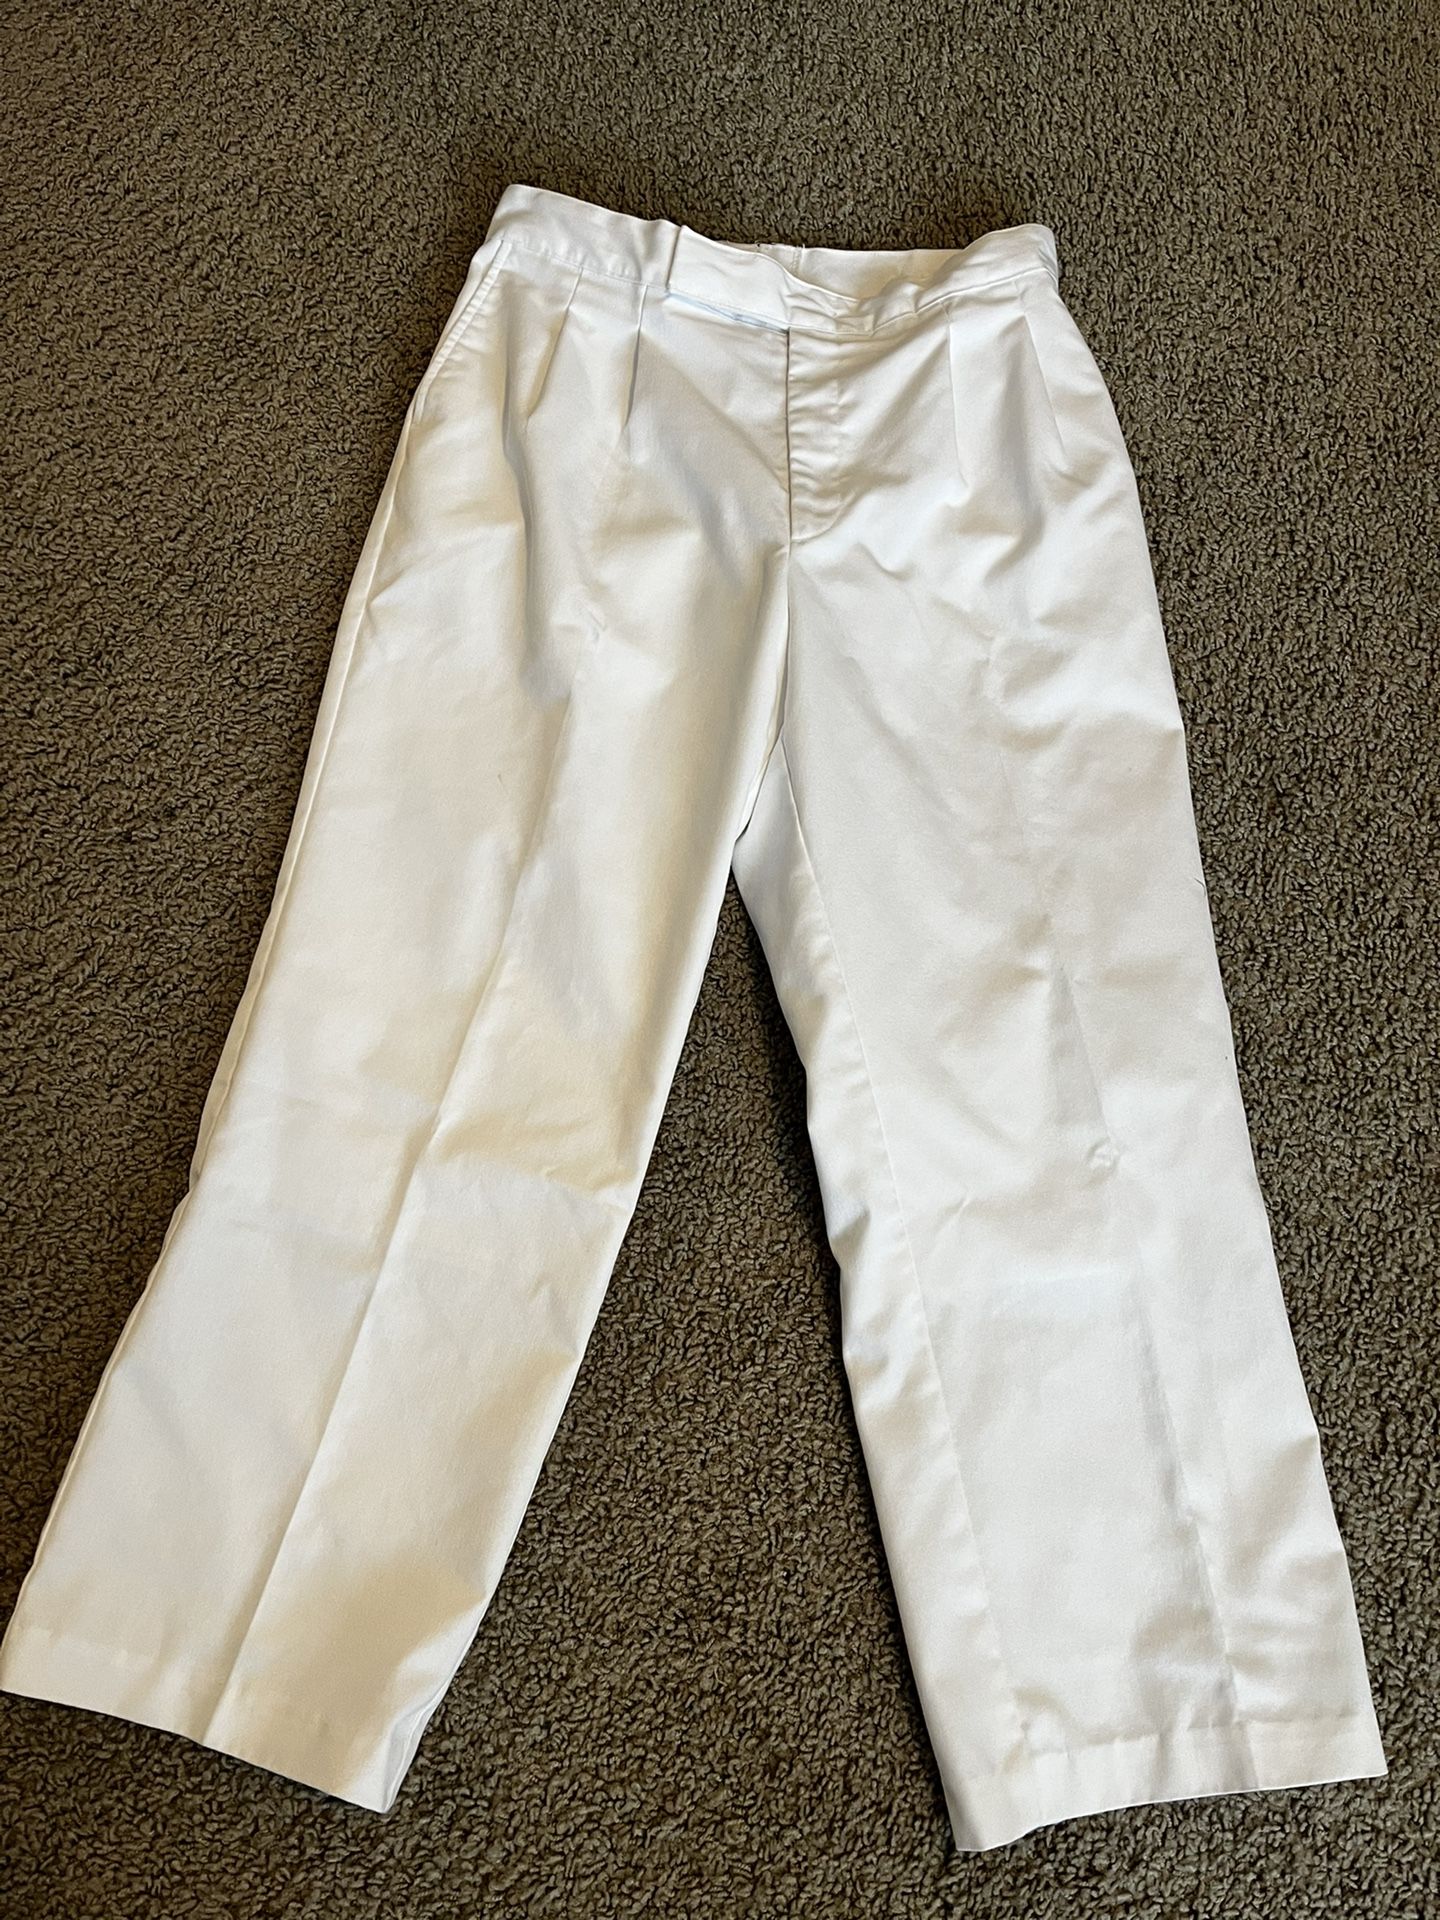 White baptismal/temple dress pants